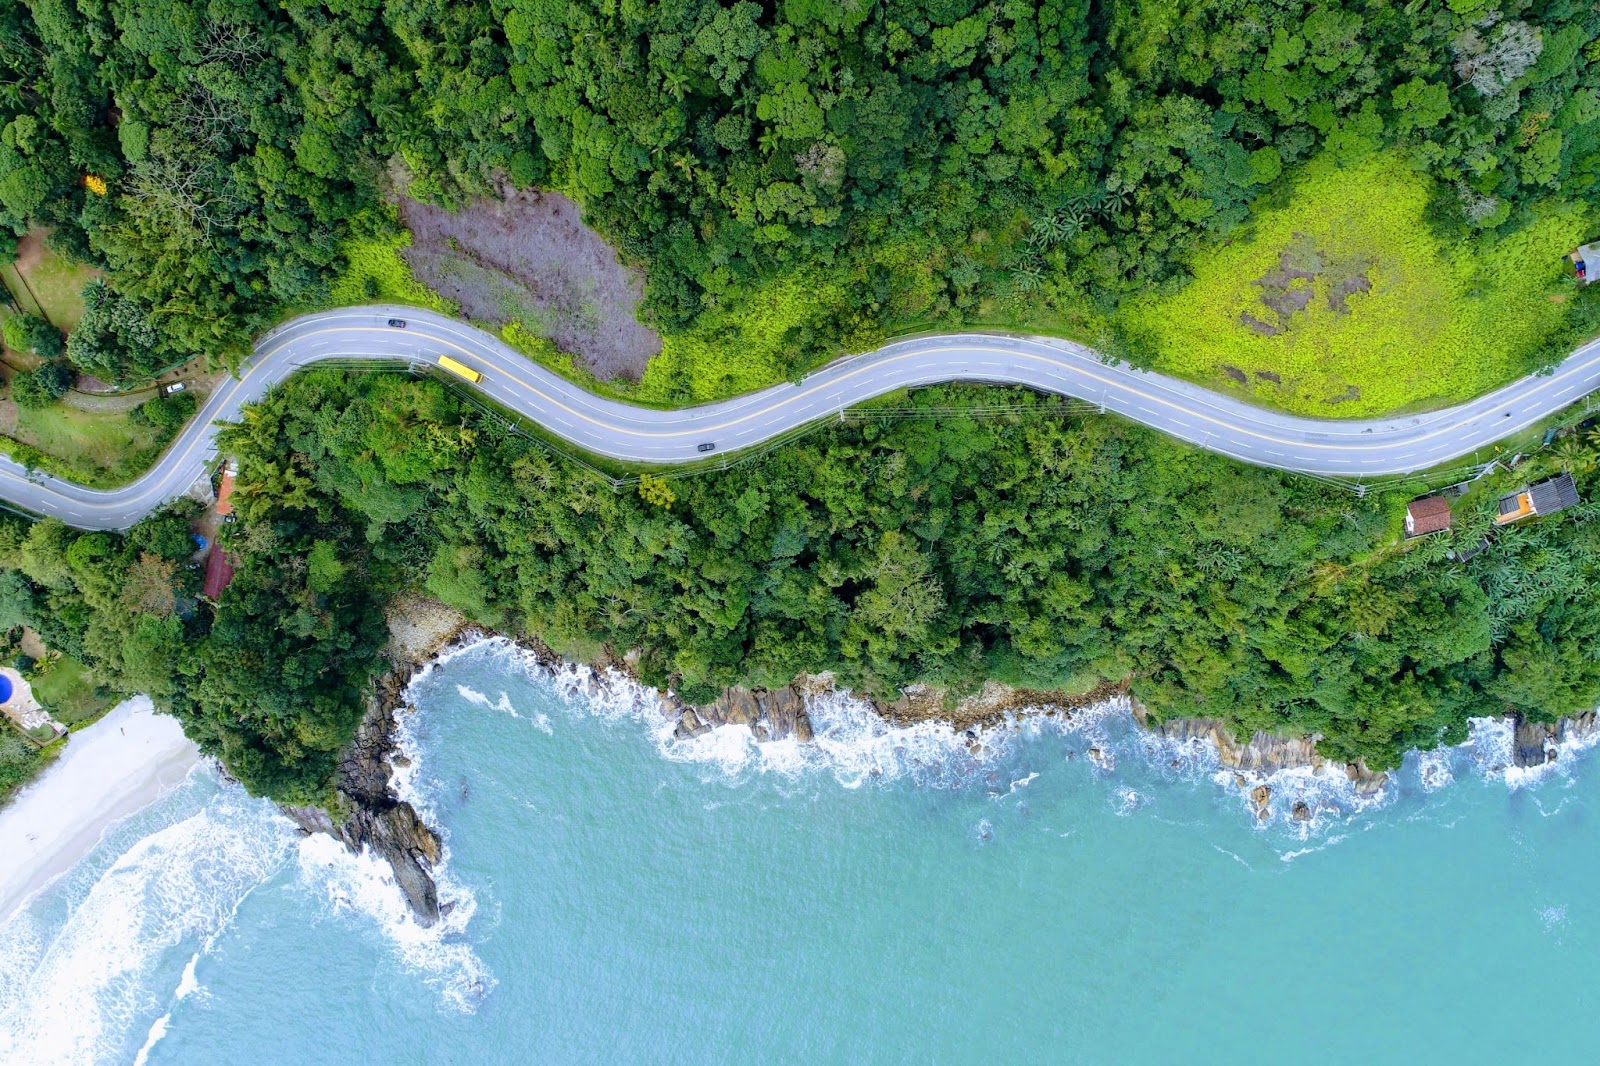 Trecho da Rodovia Rio-Santos, em São Sebastião. A estrada sinuosa passa por uma encosta densamente arborizada que é limitada pelo mar azul.